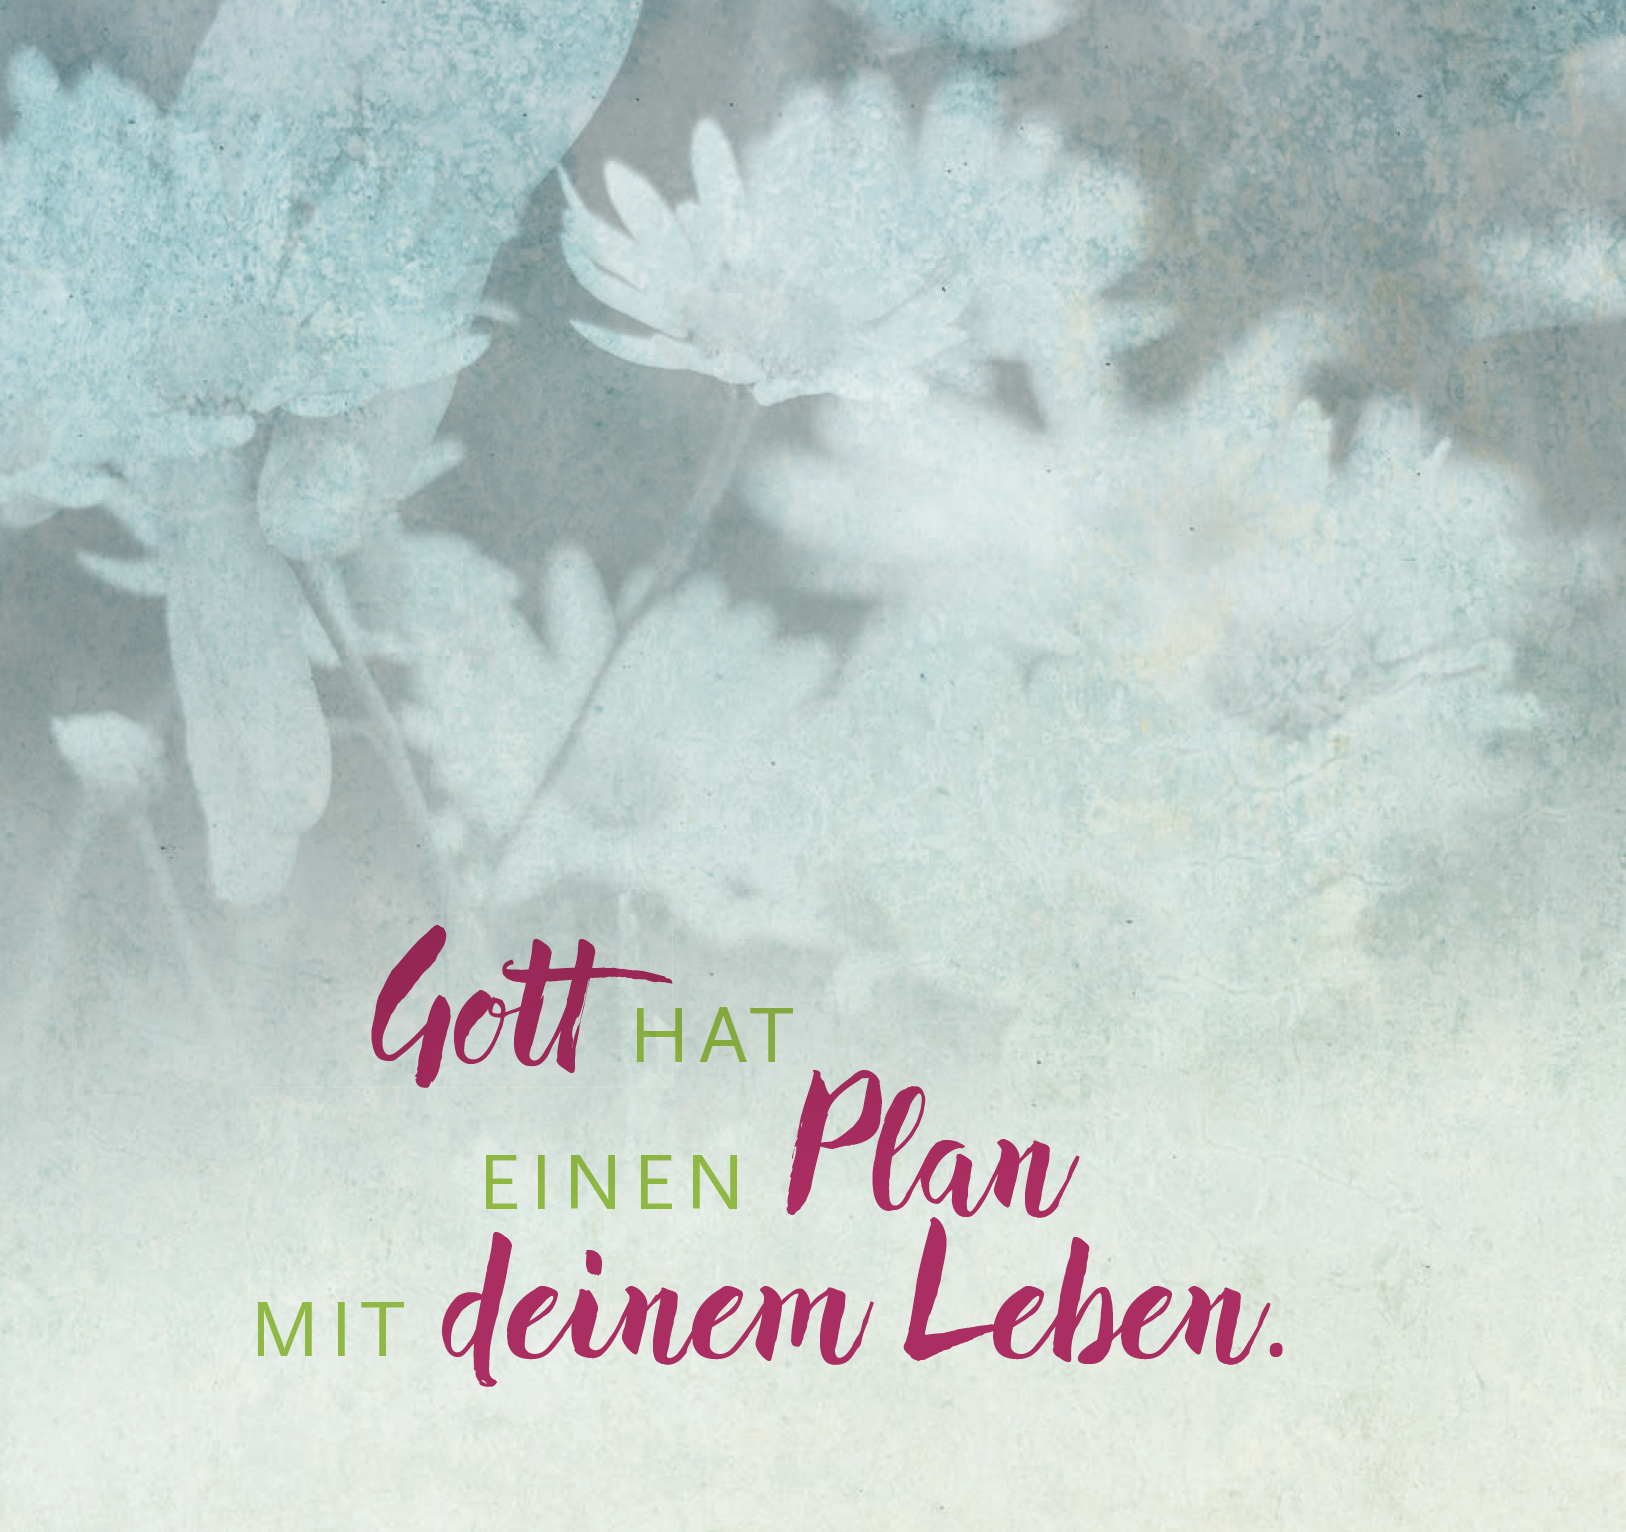 Gott hat einen Plan mit deinem Leben